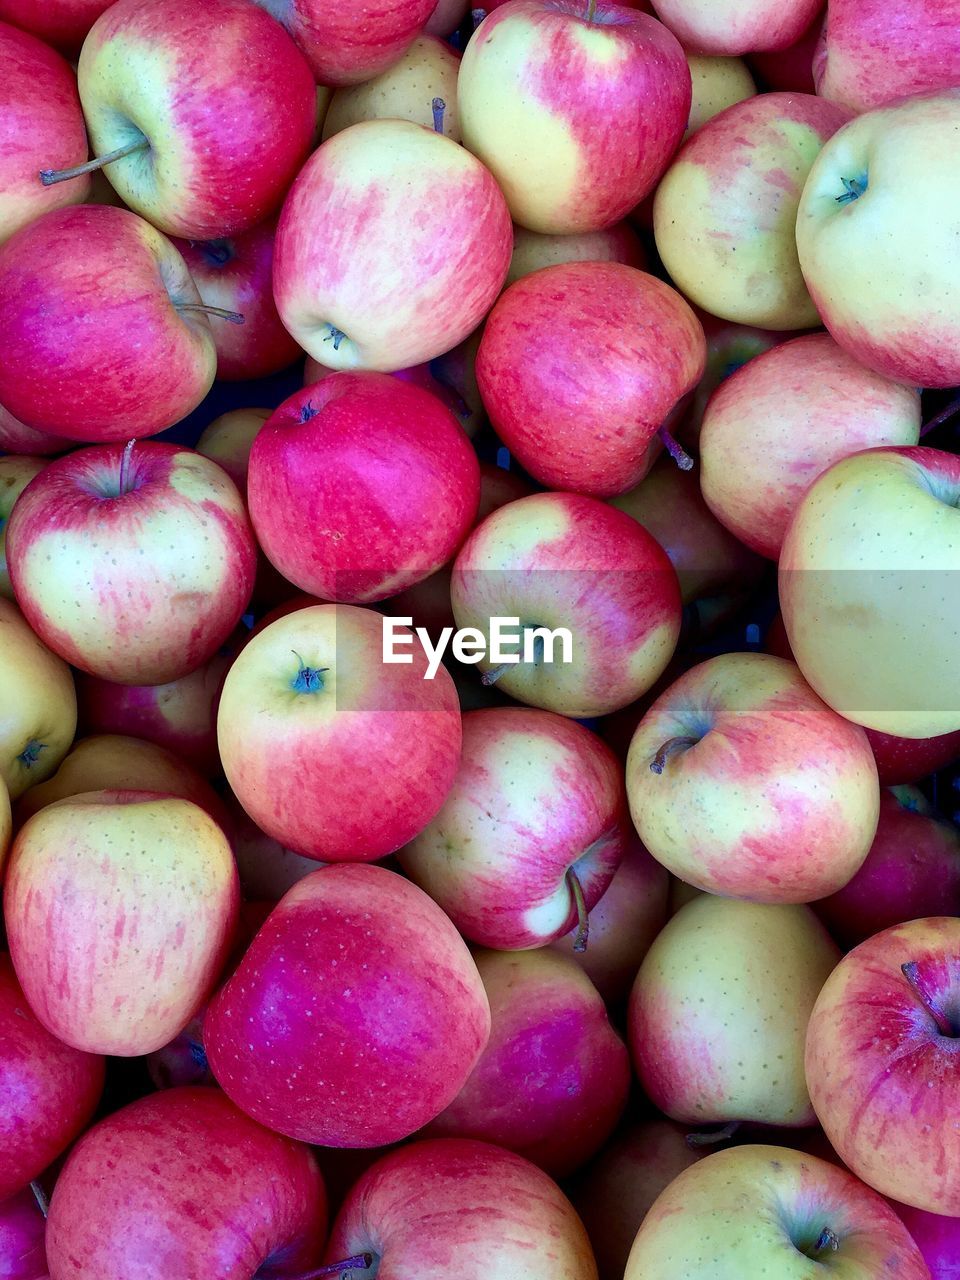 Full frame shot of apples for sale